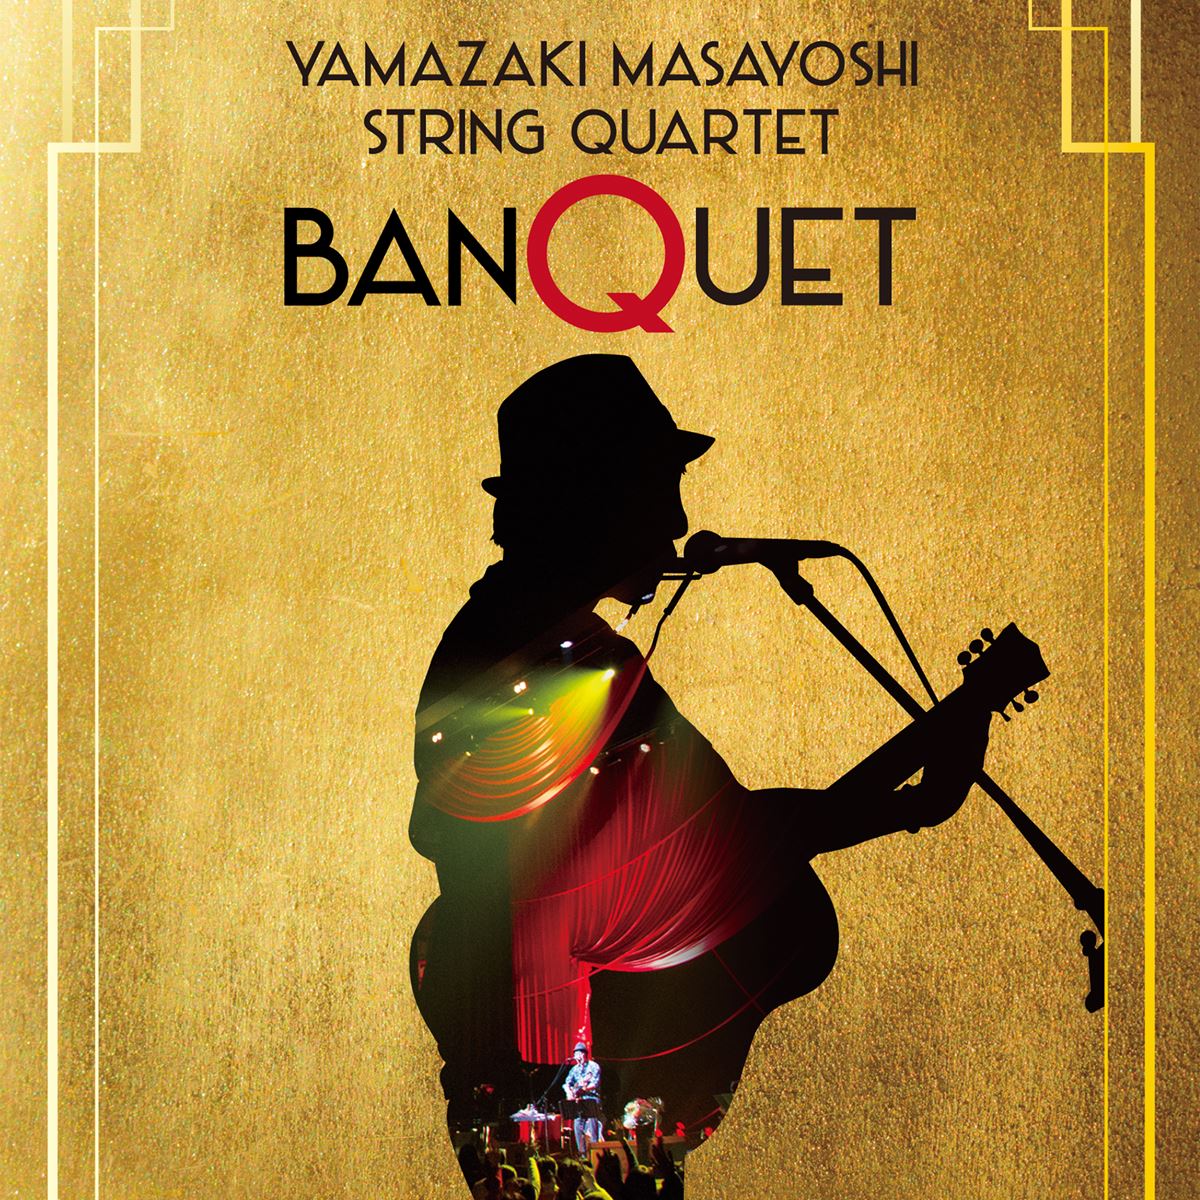 『YAMAZAKI MASAYOSHI String Quartet “BANQUET”』